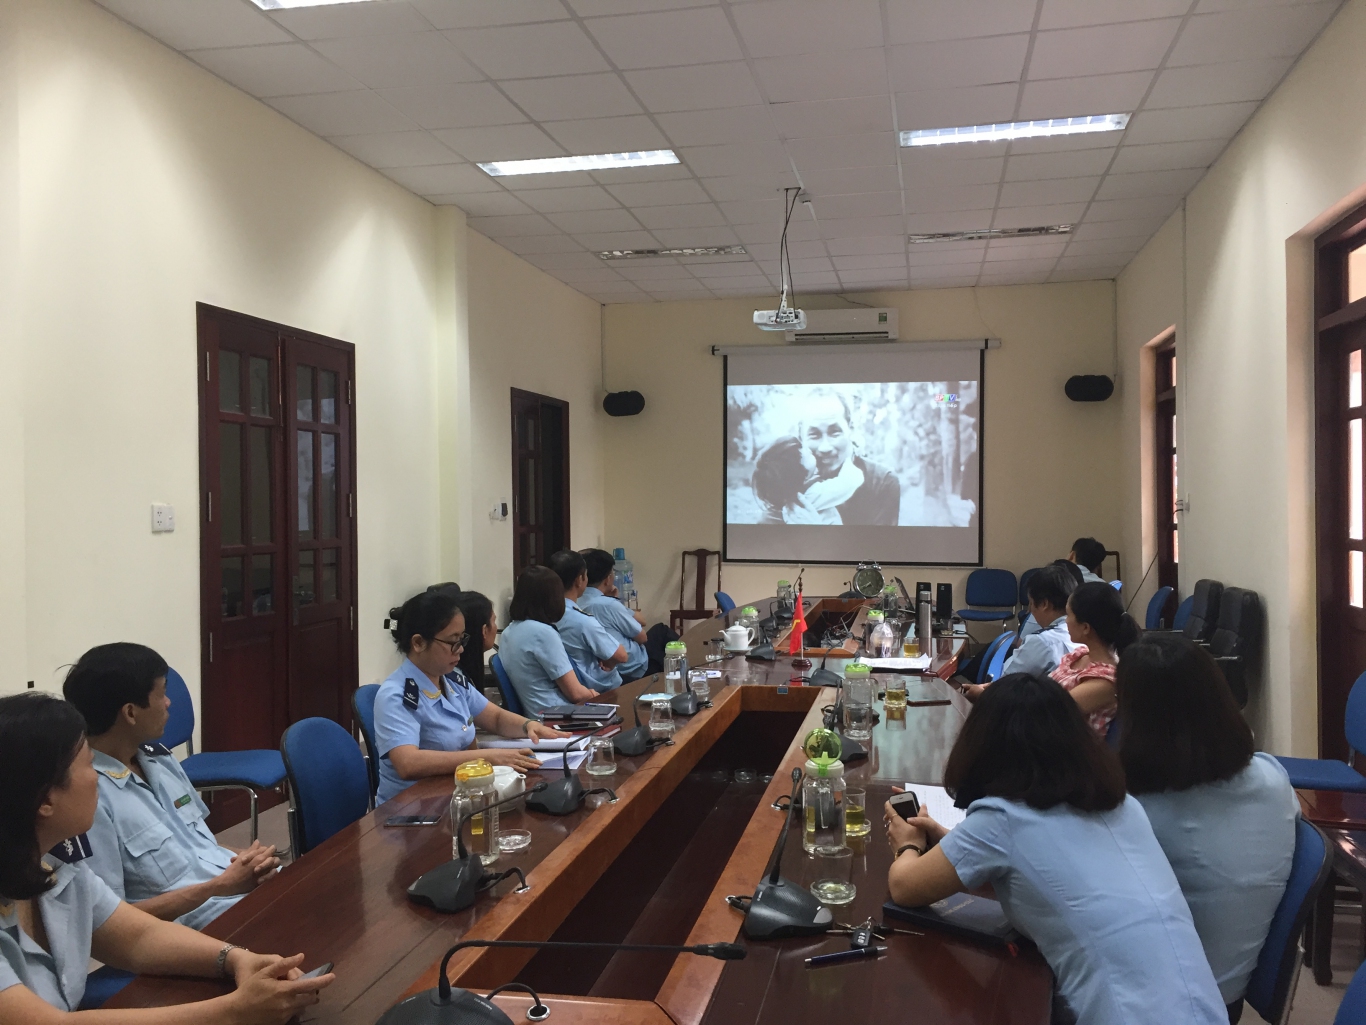 CBCC-NV theo dõi chương trình truyền hình trực tiếp Lễ kỷ niệm 130 năm ngày sinh nhật Chủ tịch Hồ Chí Minh (19/5/1890 - 19/5/2020)